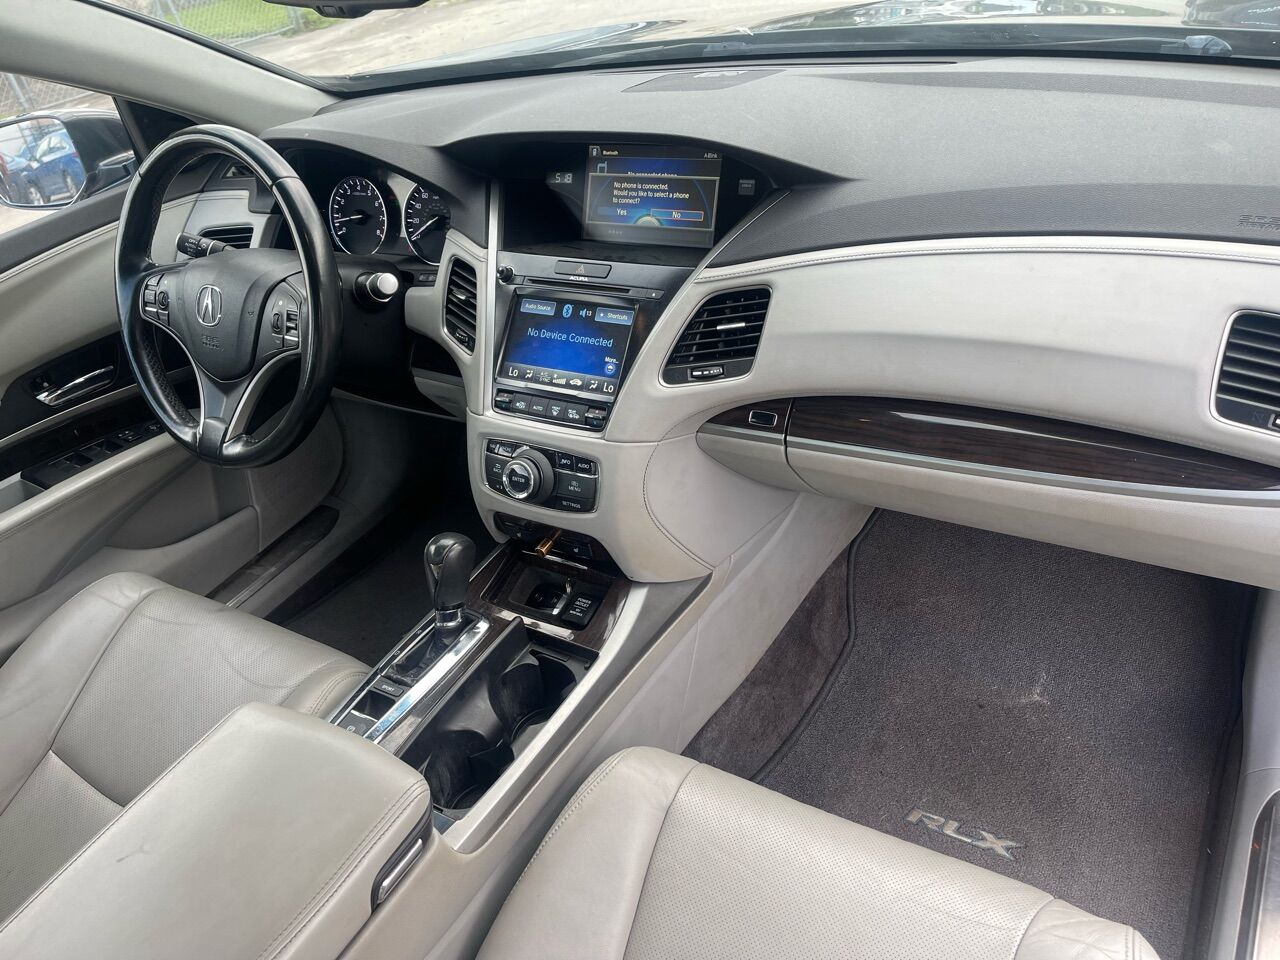 2014 ACURA RLX Sedan - $15,995